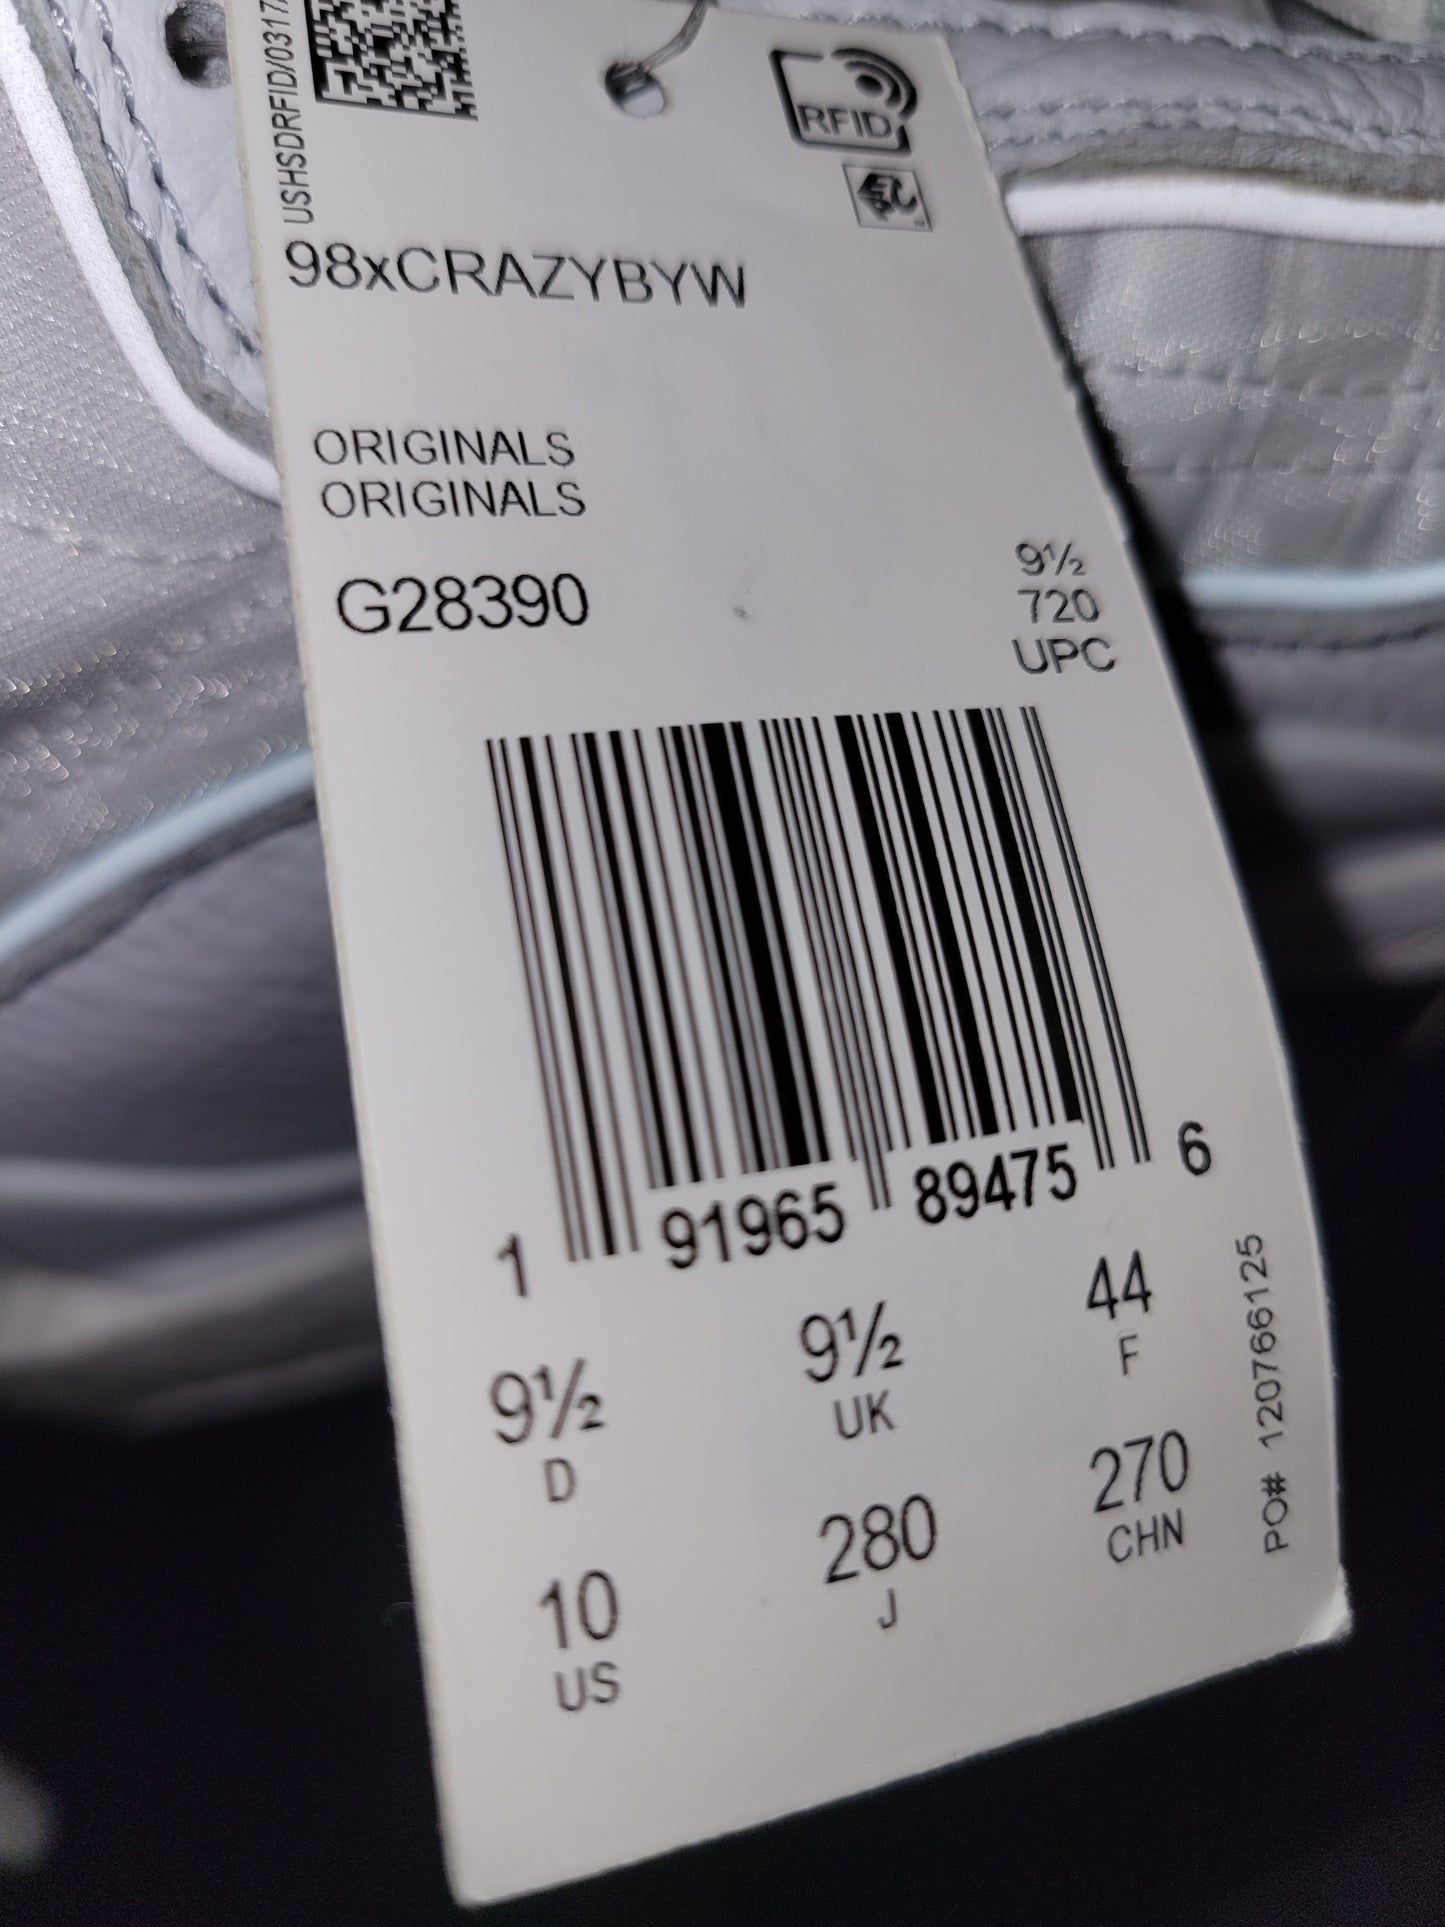 Adidas Crazy 98 Byw